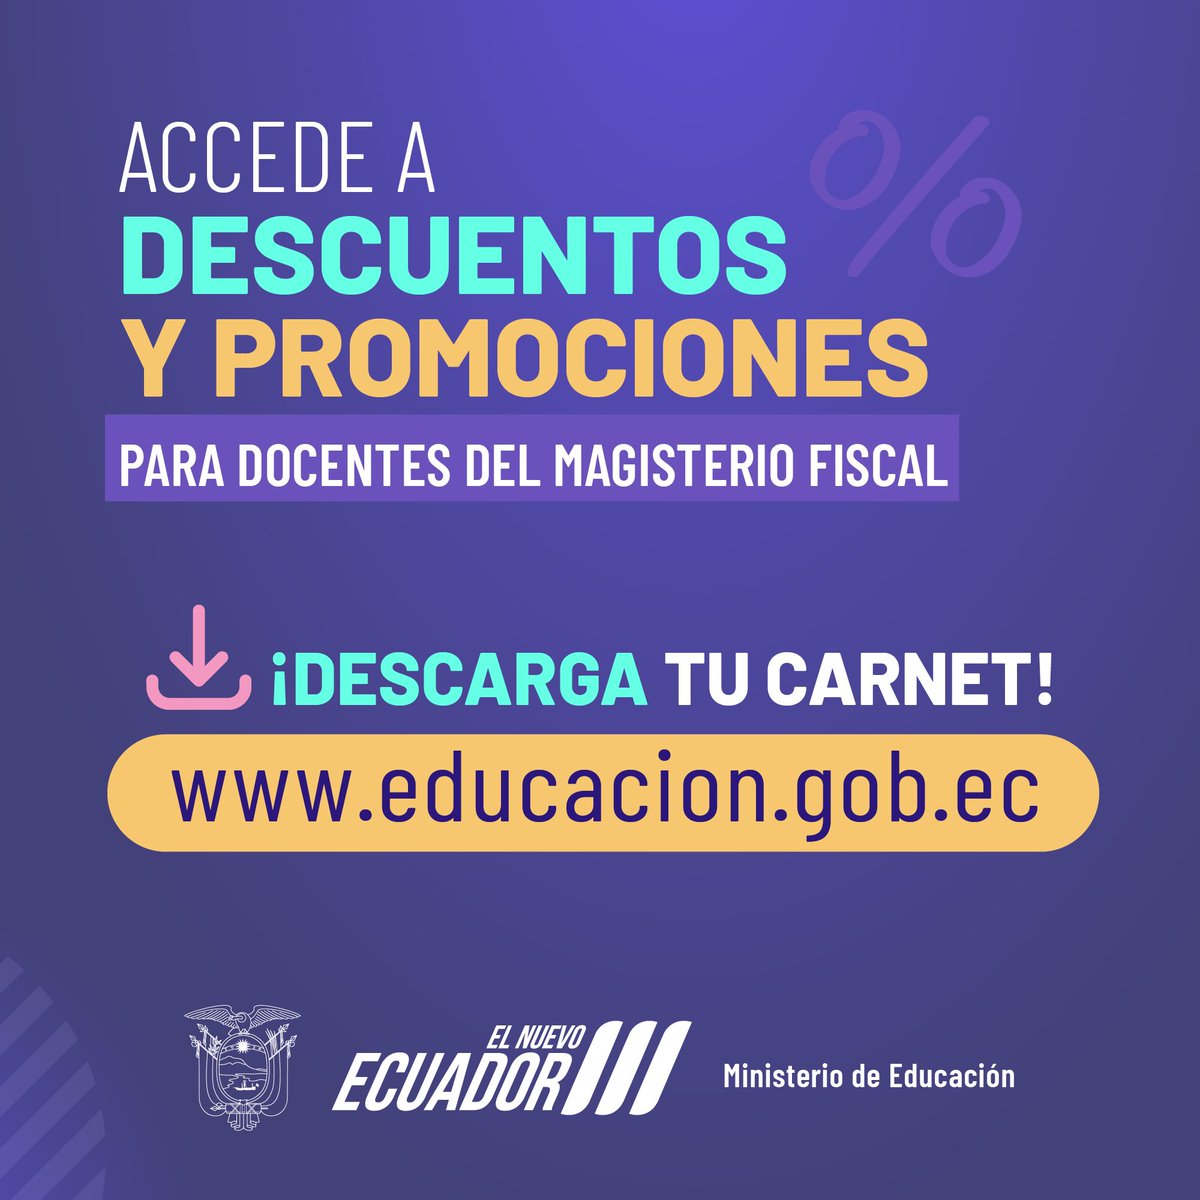 Educacion_Ec tweet picture